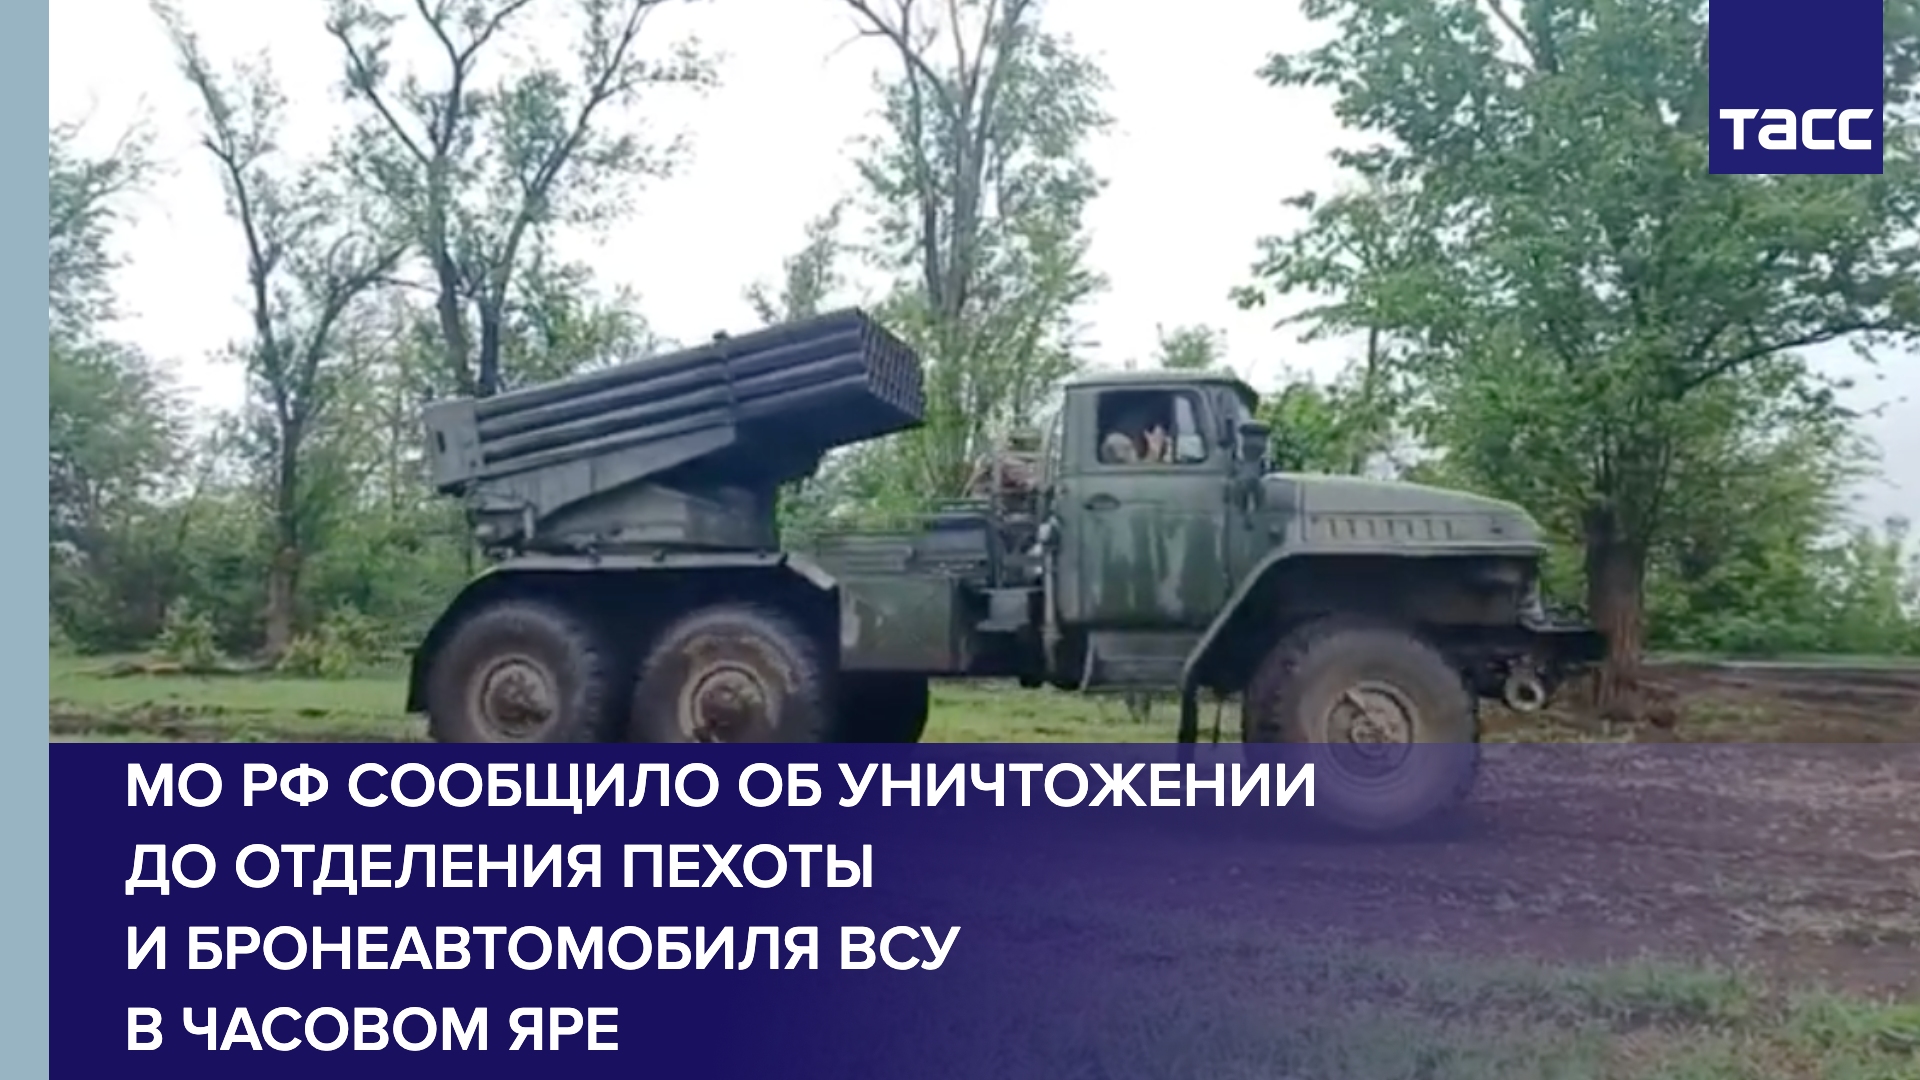 МО РФ сообщило об уничтожении до отделения пехоты и бронеавтомобиля ВСУ в Часовом Яре